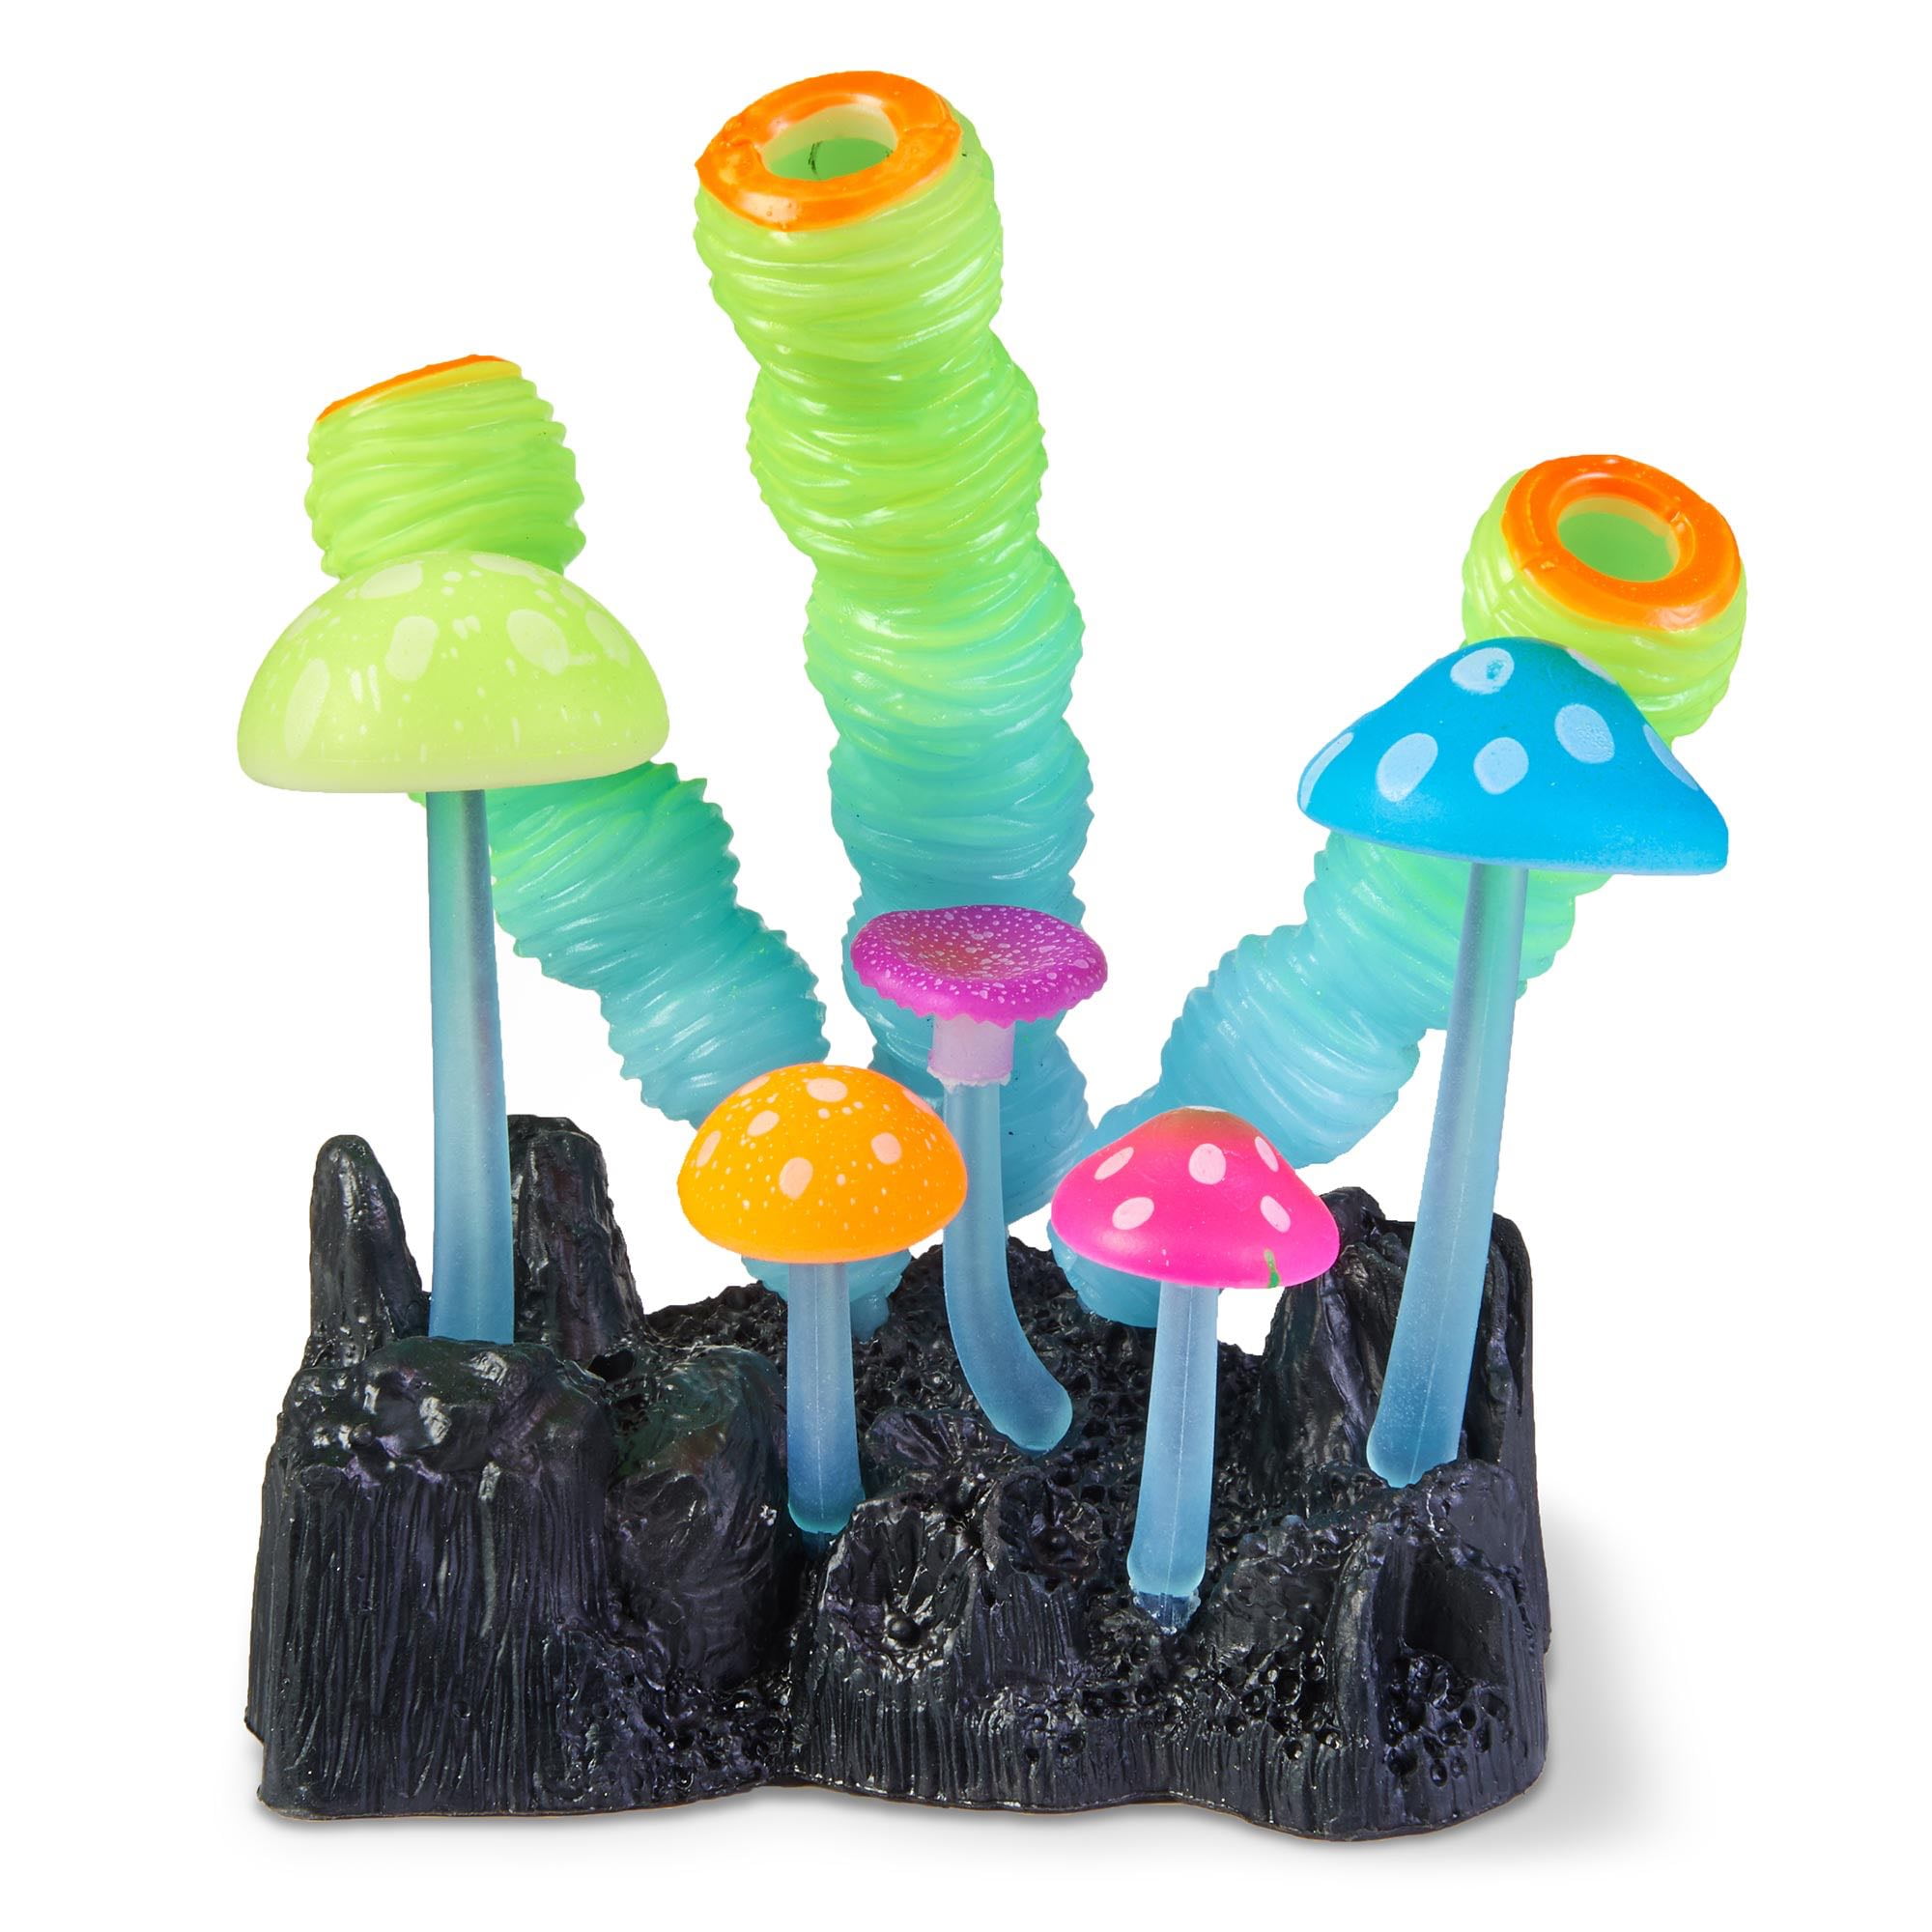 Aqua Culture Glow In The Dark Tube Mushrooms Aquarium Ornament Walmart Com Walmart Com